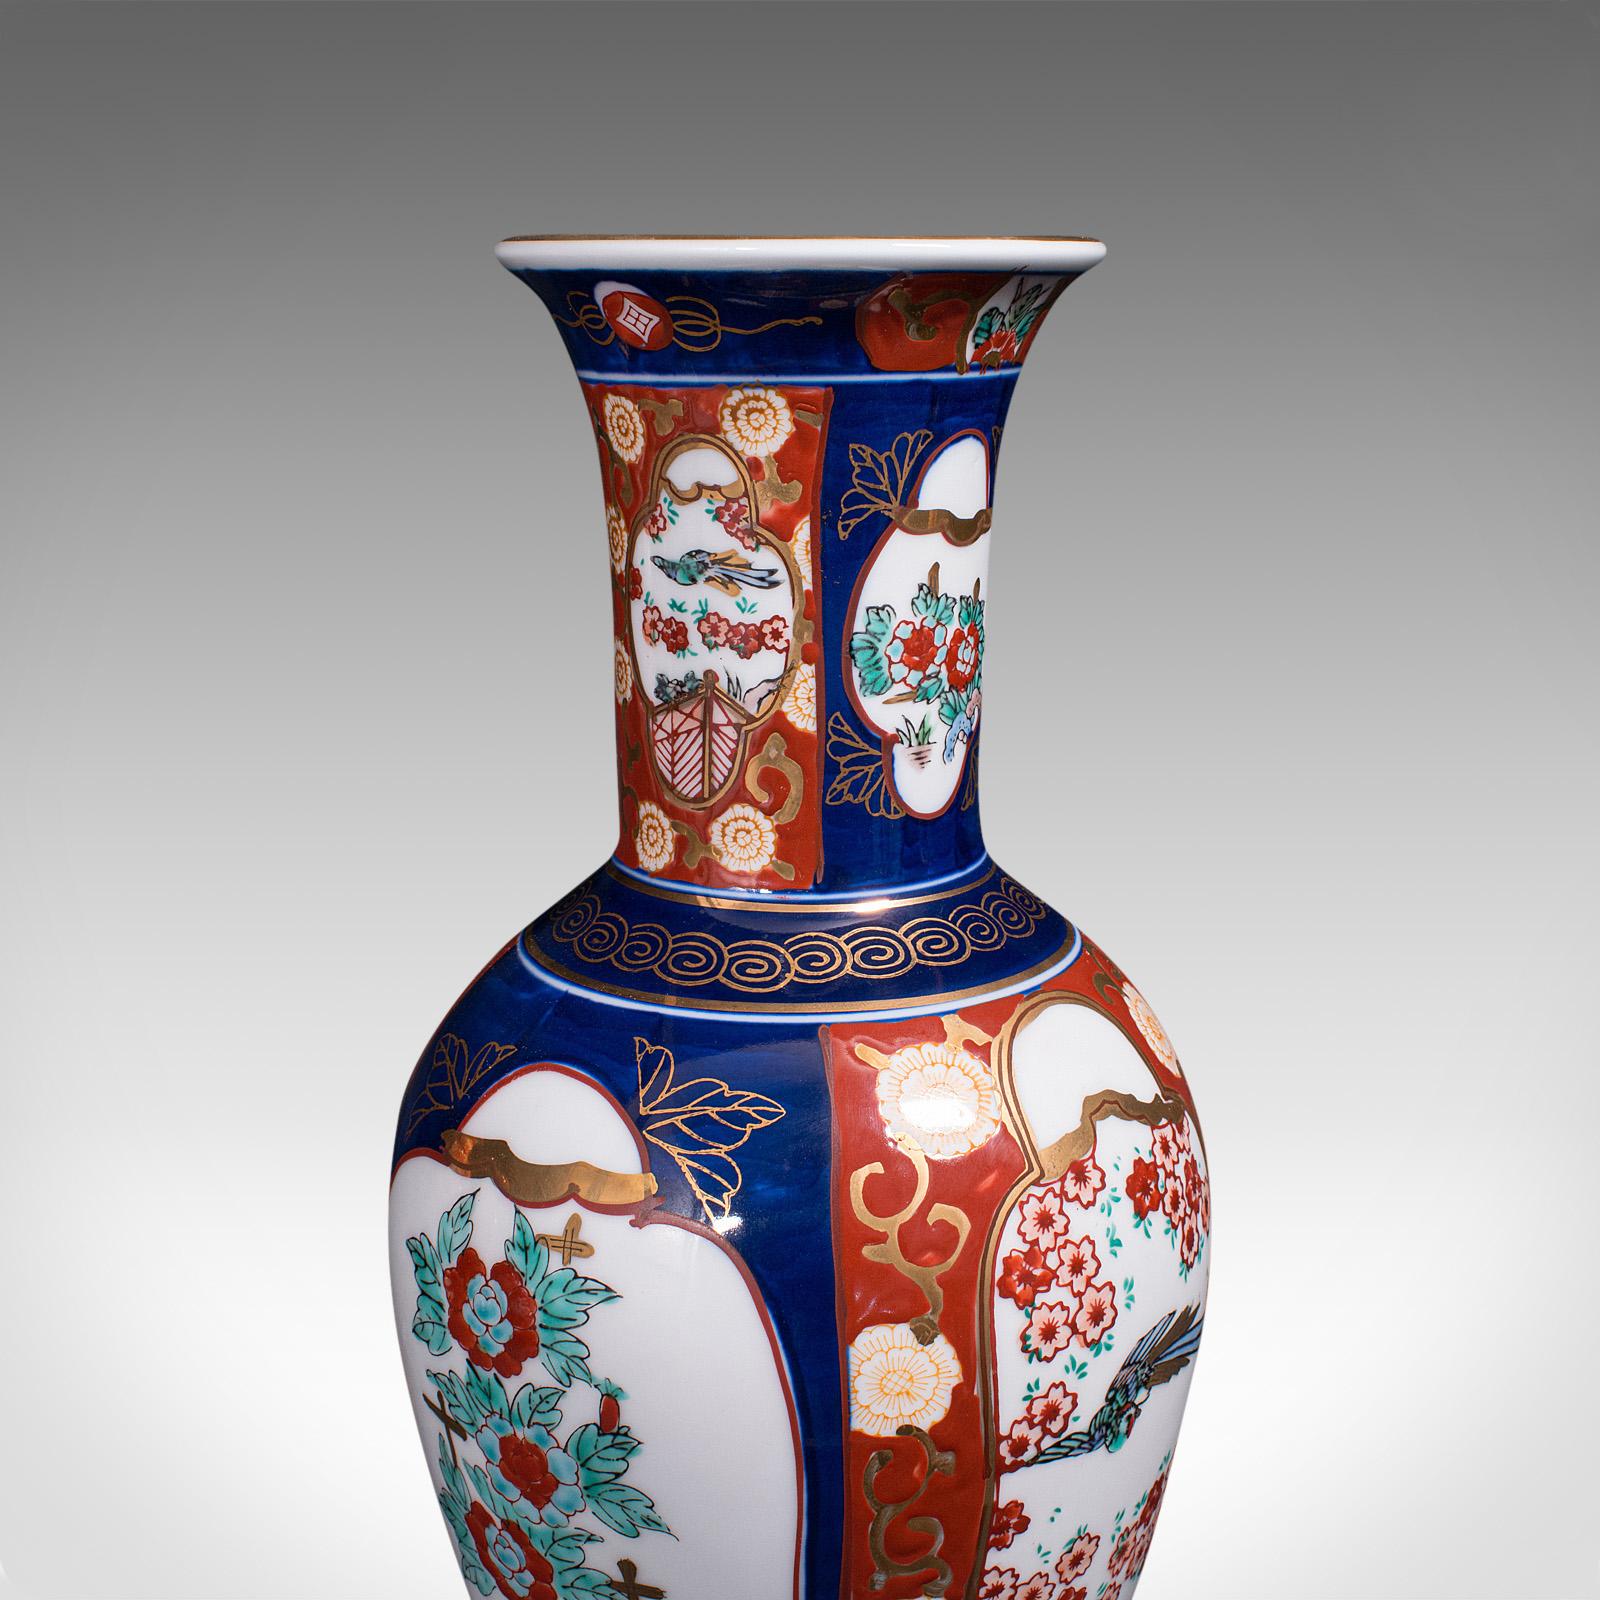 Pair of Vintage Flower Vases, Chinese, Display Urn, Imari Revival, Late 20th.C 3